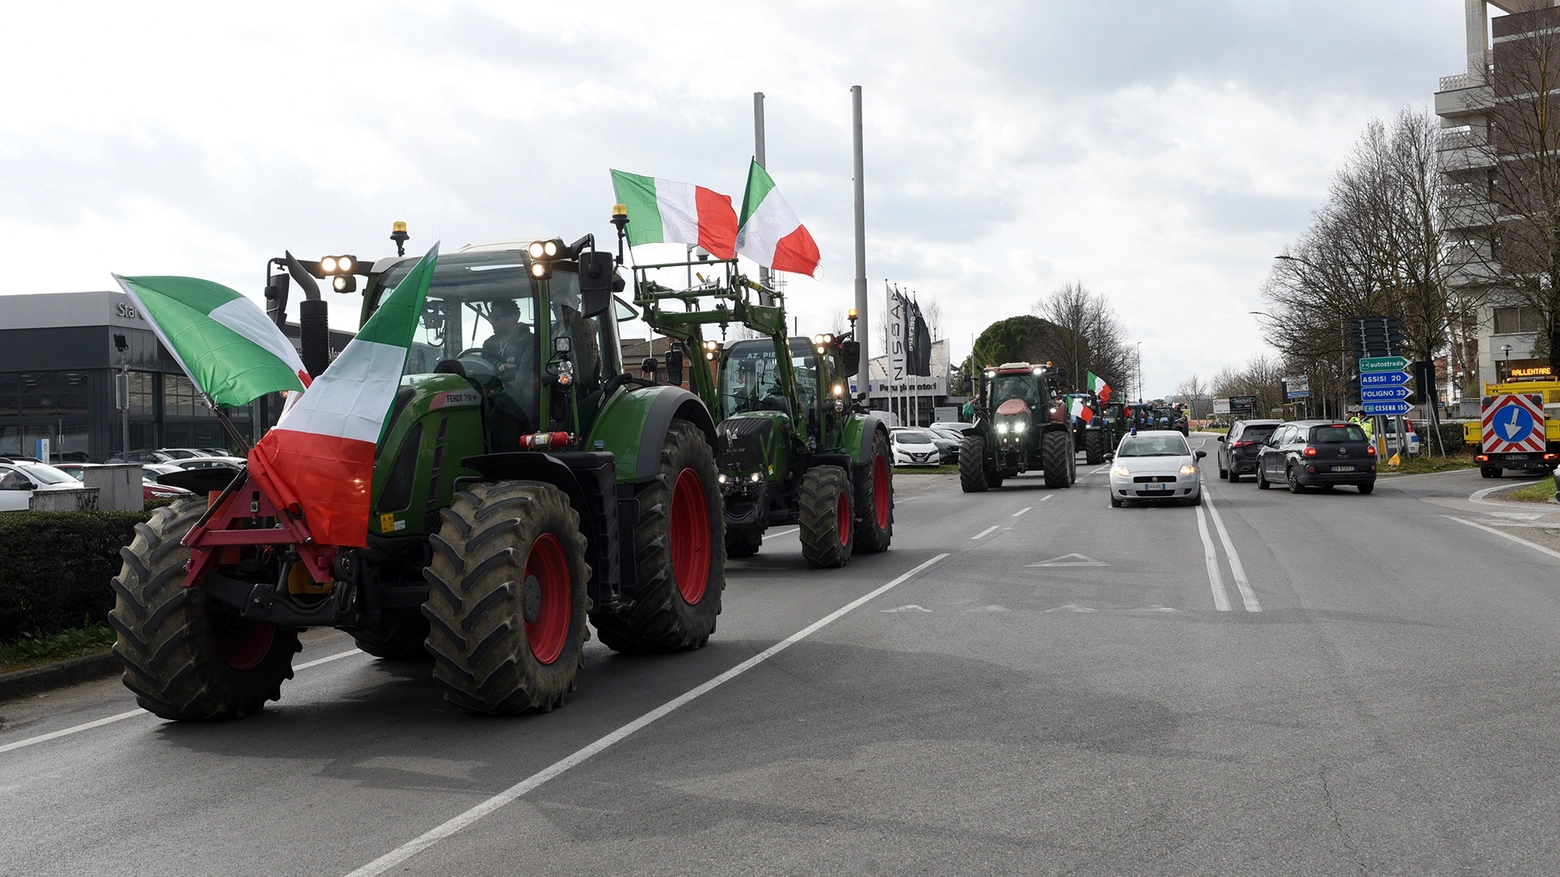 La protesta dei trattori a Perugia (Foto Crocchioni)